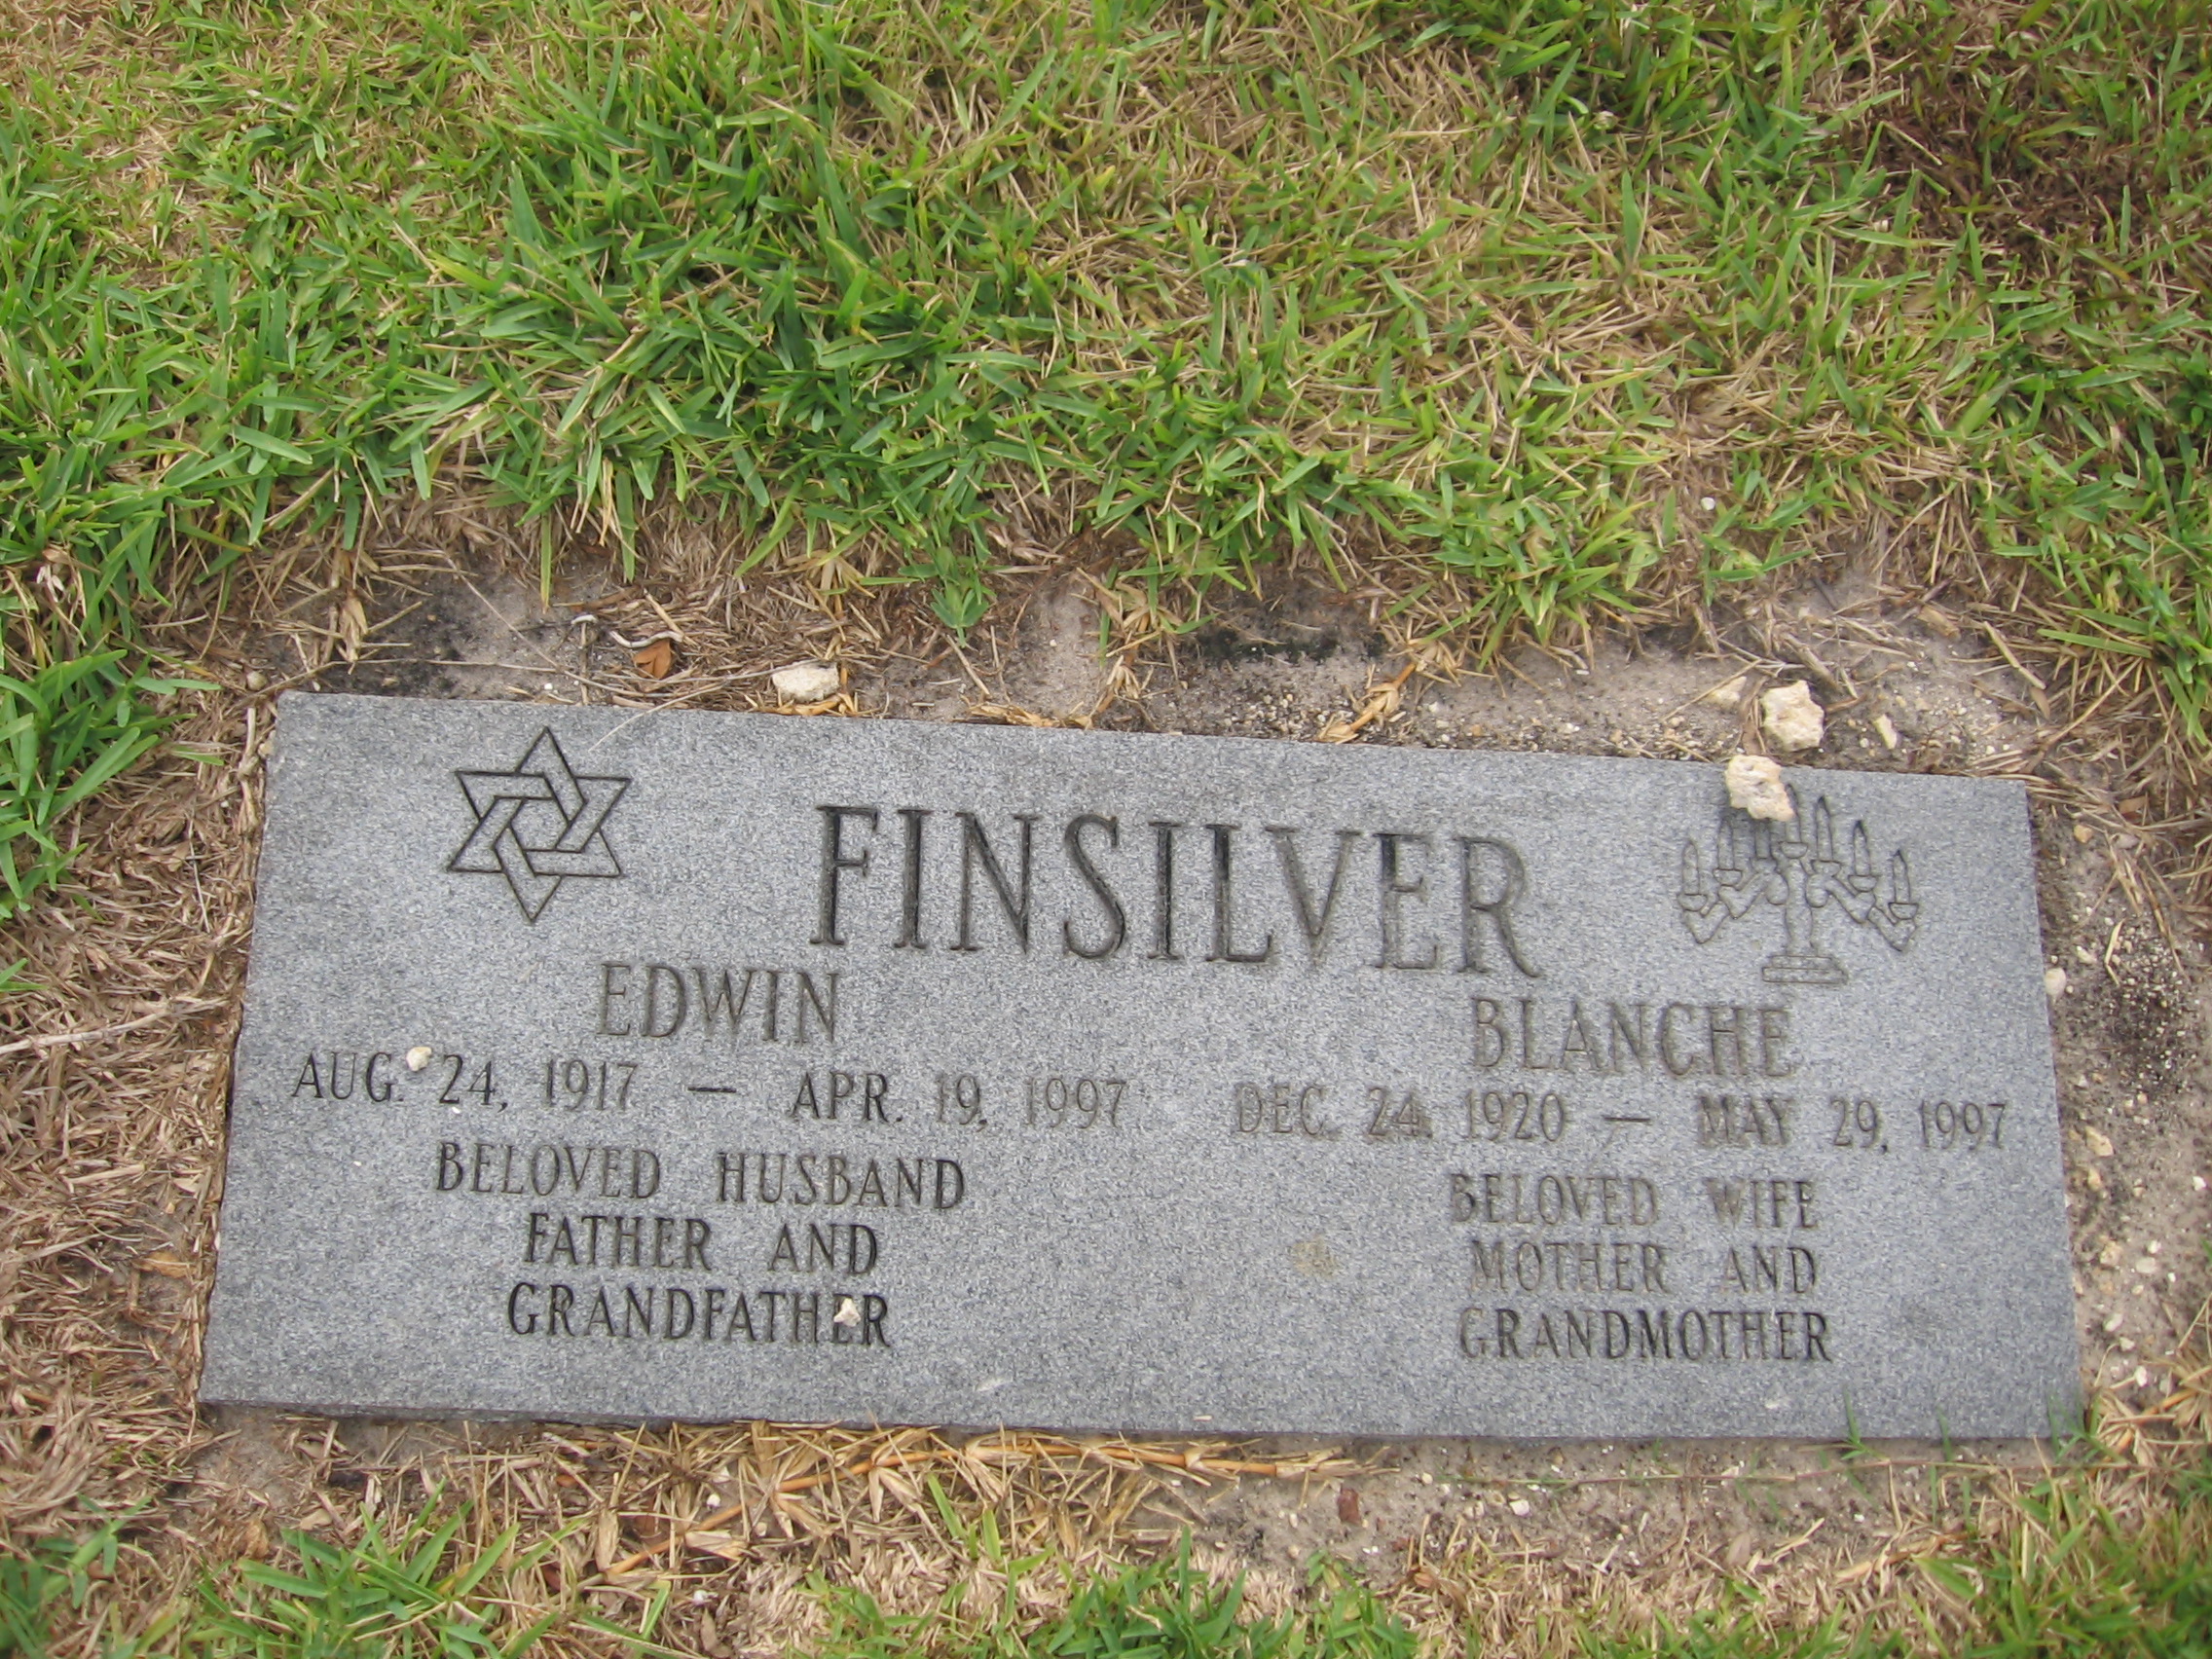 Edwin Finsilver